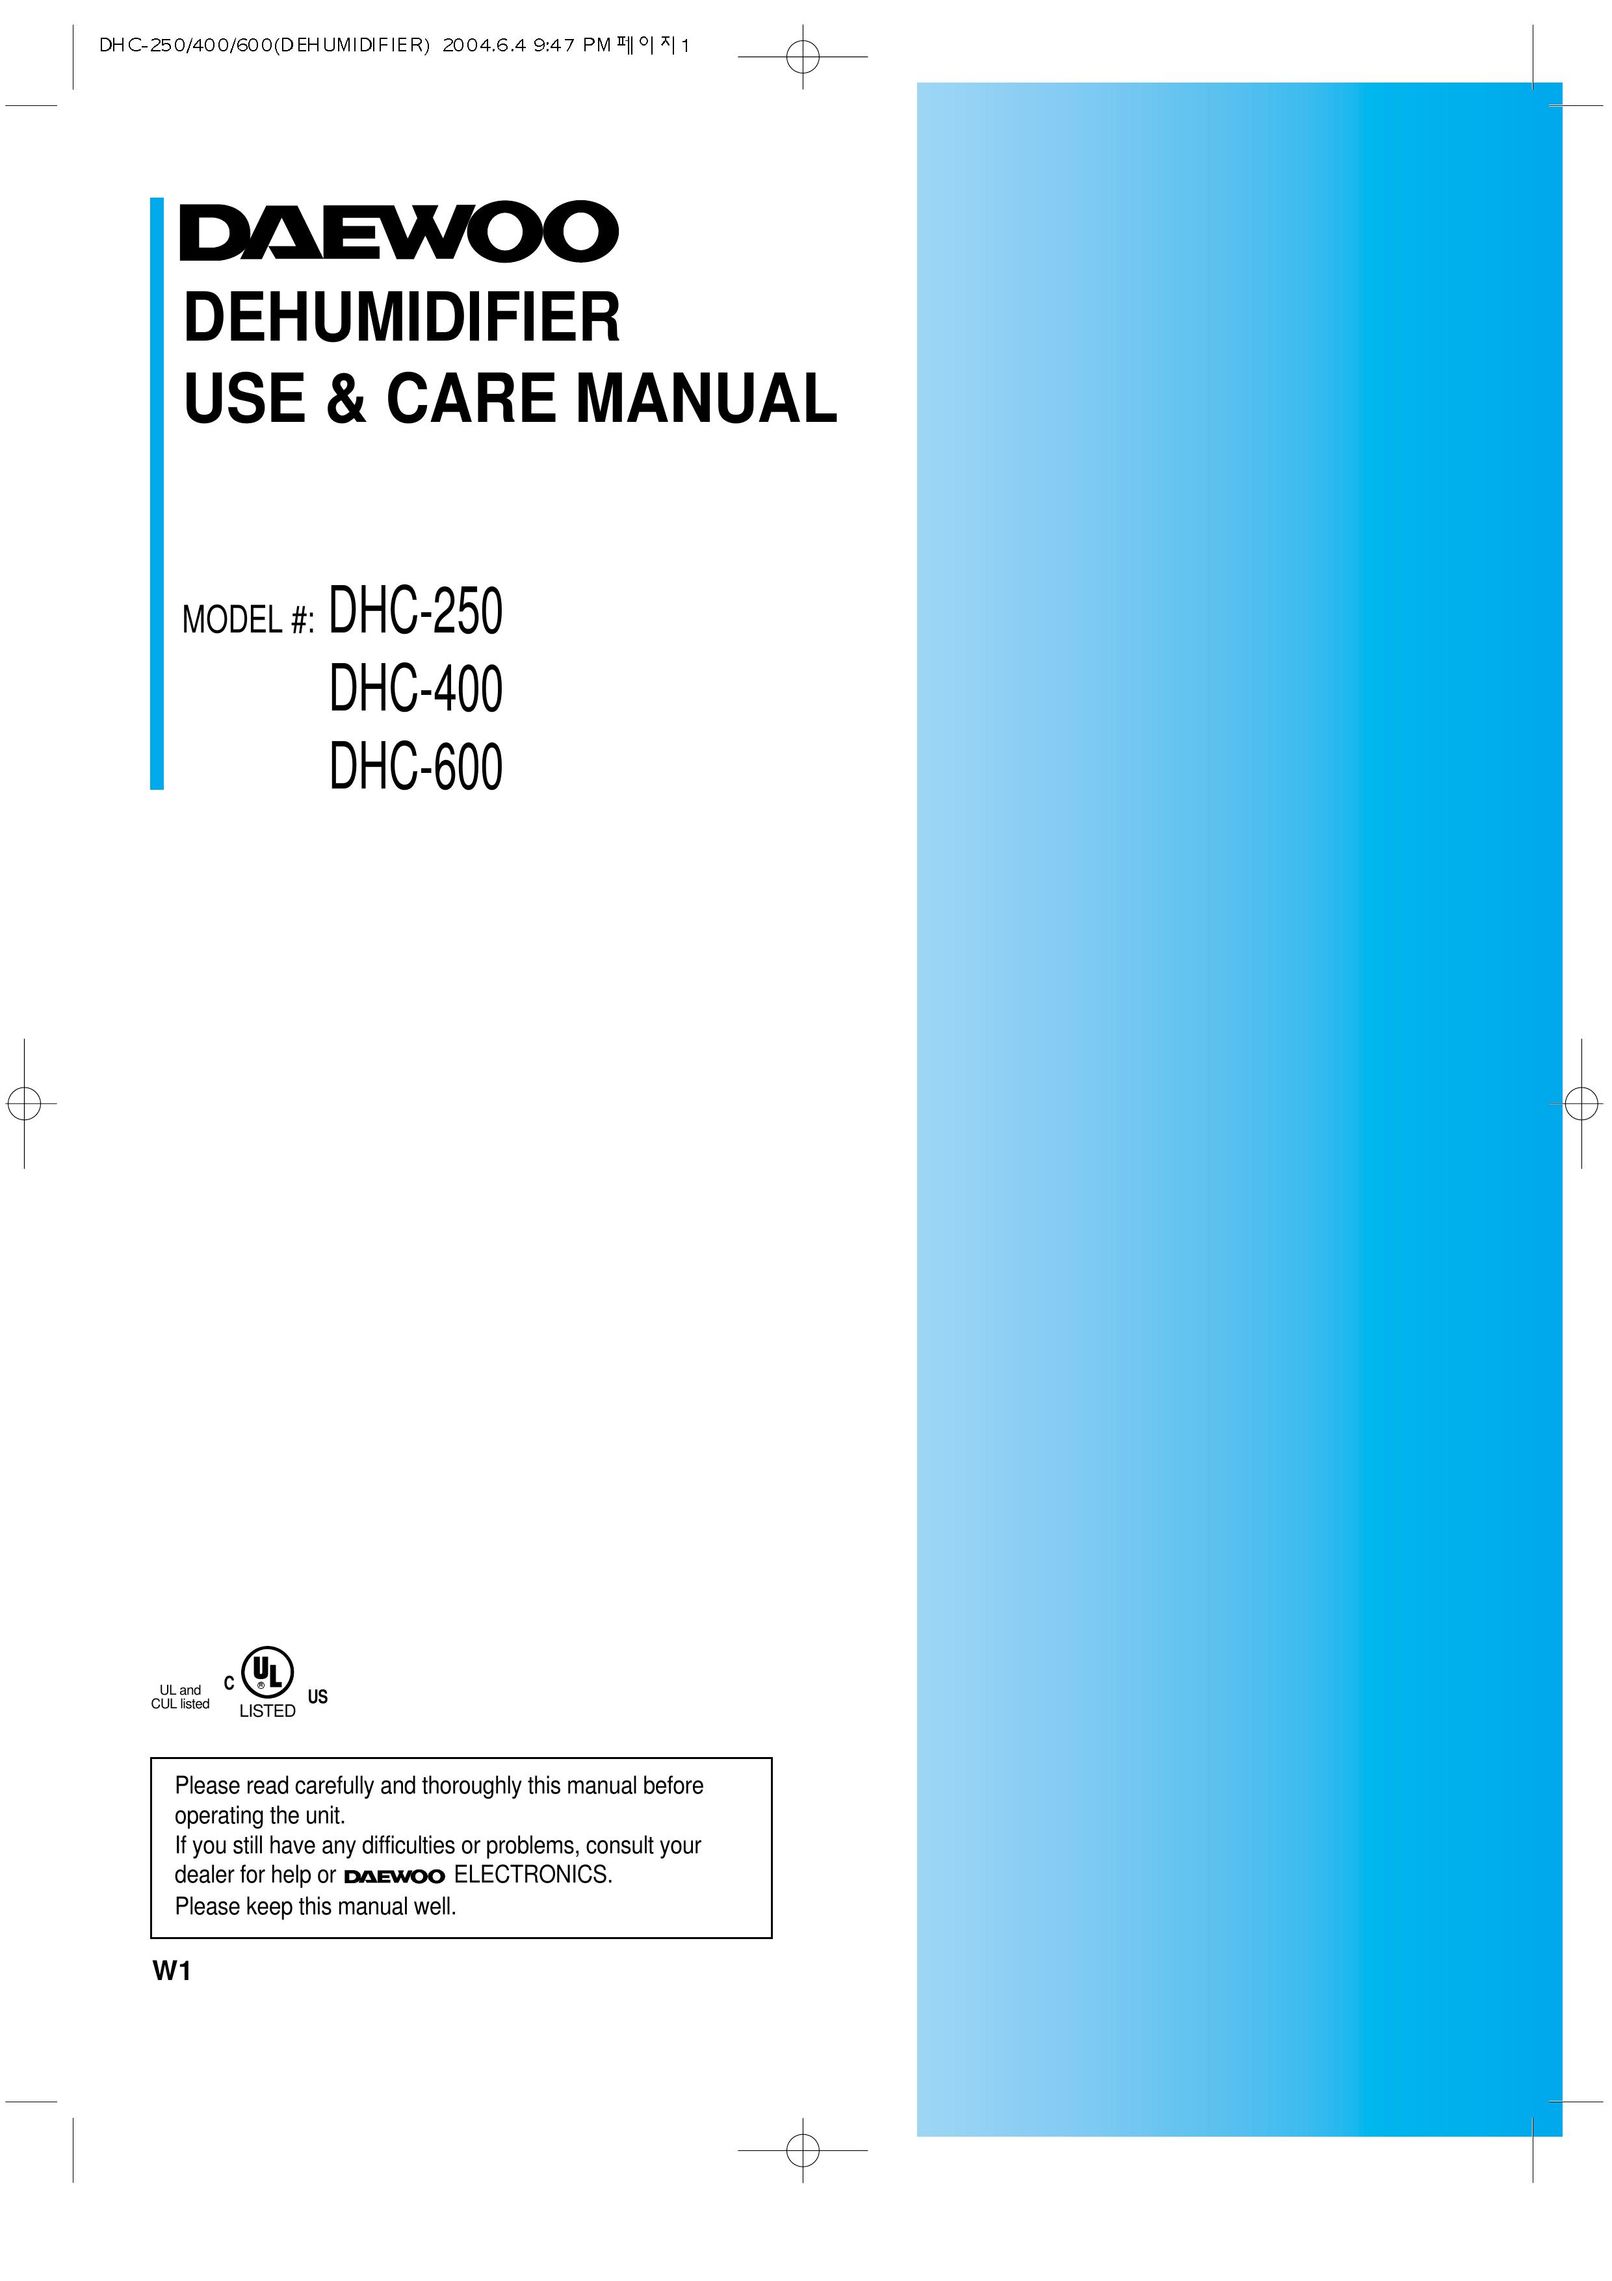 Daewoo DHC-250 Dehumidifier User Manual